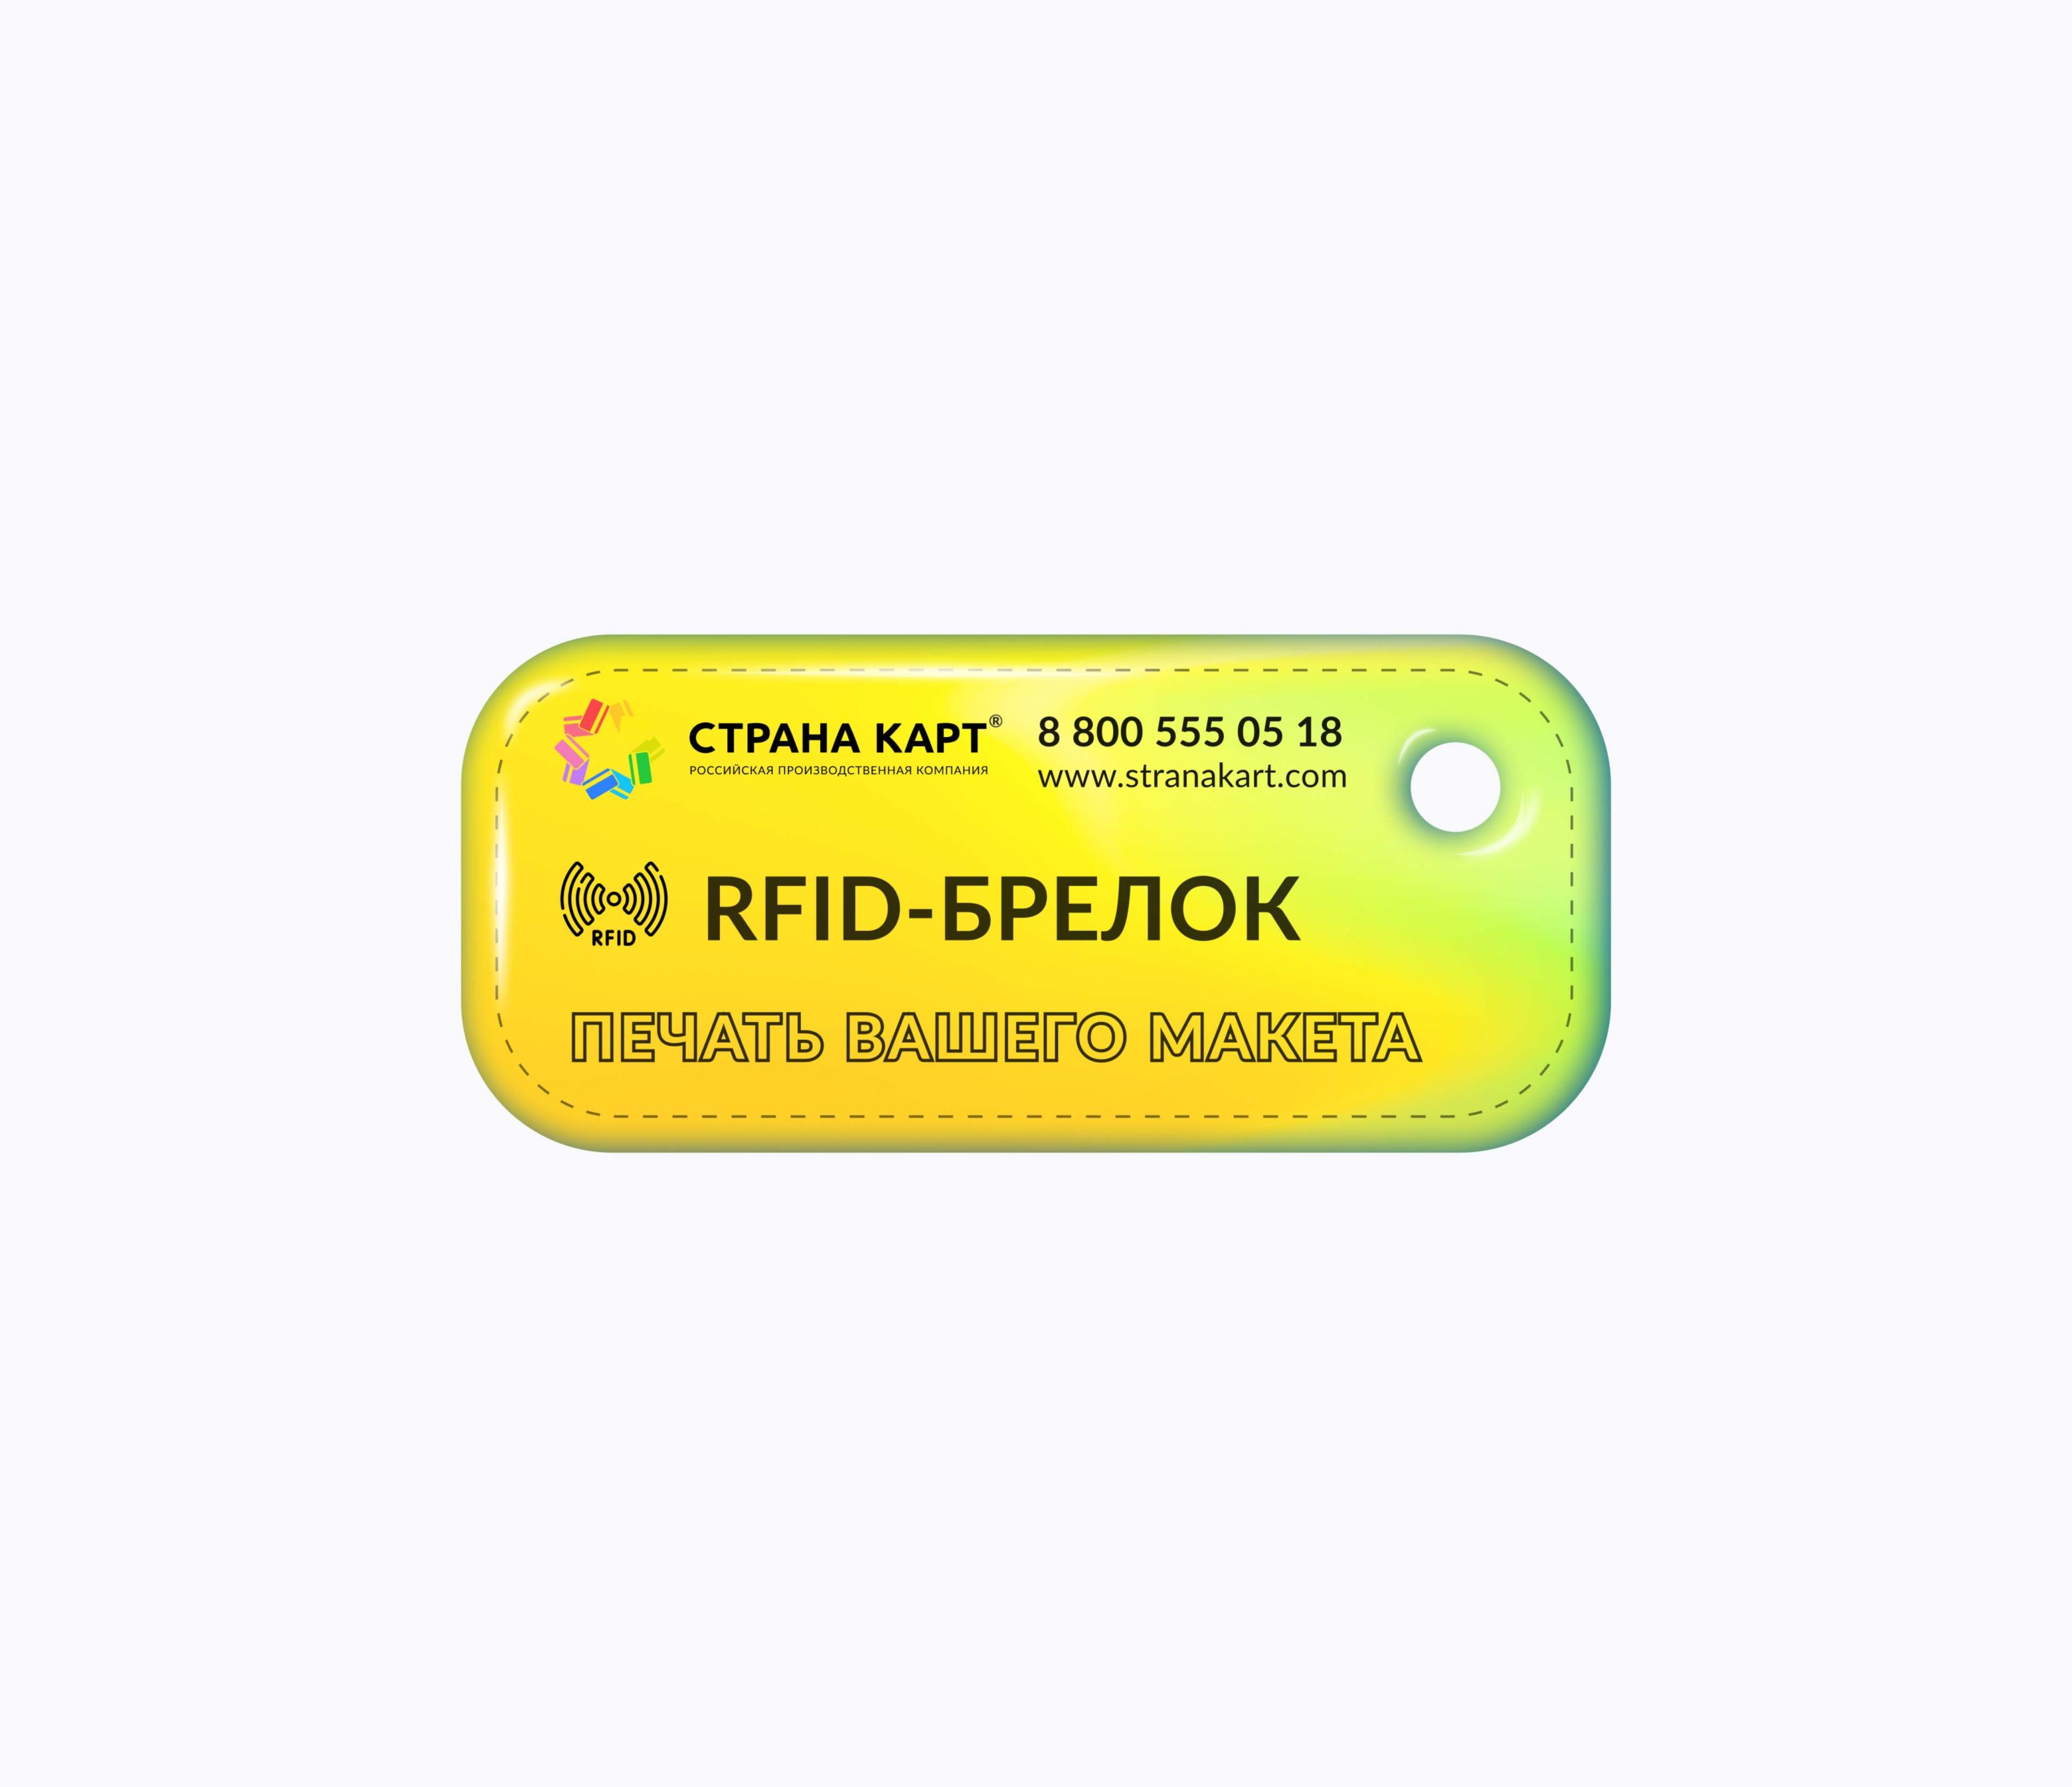 Прямоугольные Мини RFID-брелоки NEOKEY® с чипом skipass для горнолыжных курортов RFID-брелоки NEOKEY® с чипом skipass для горнолыжных курортов